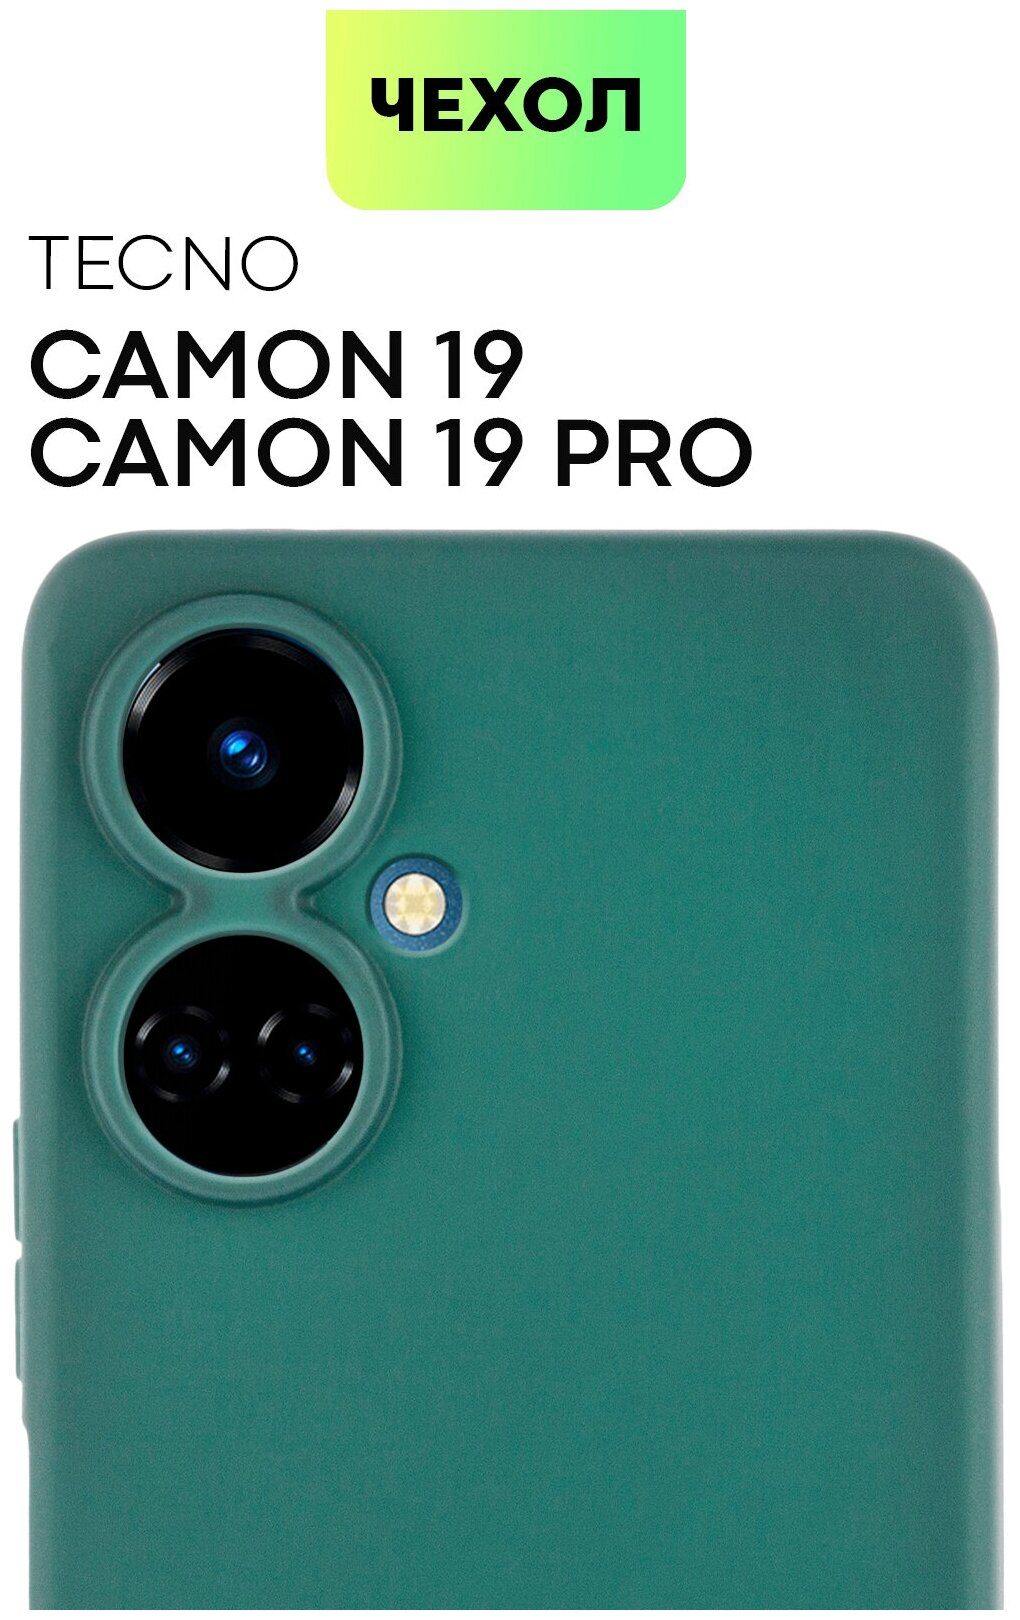 Чехол TECNO Camon 19, Camon 19 Pro (Техно Камон 19) тонкий с матовым soft-touch покрытием, защита вокруг модуля камеры, темно-зеленый